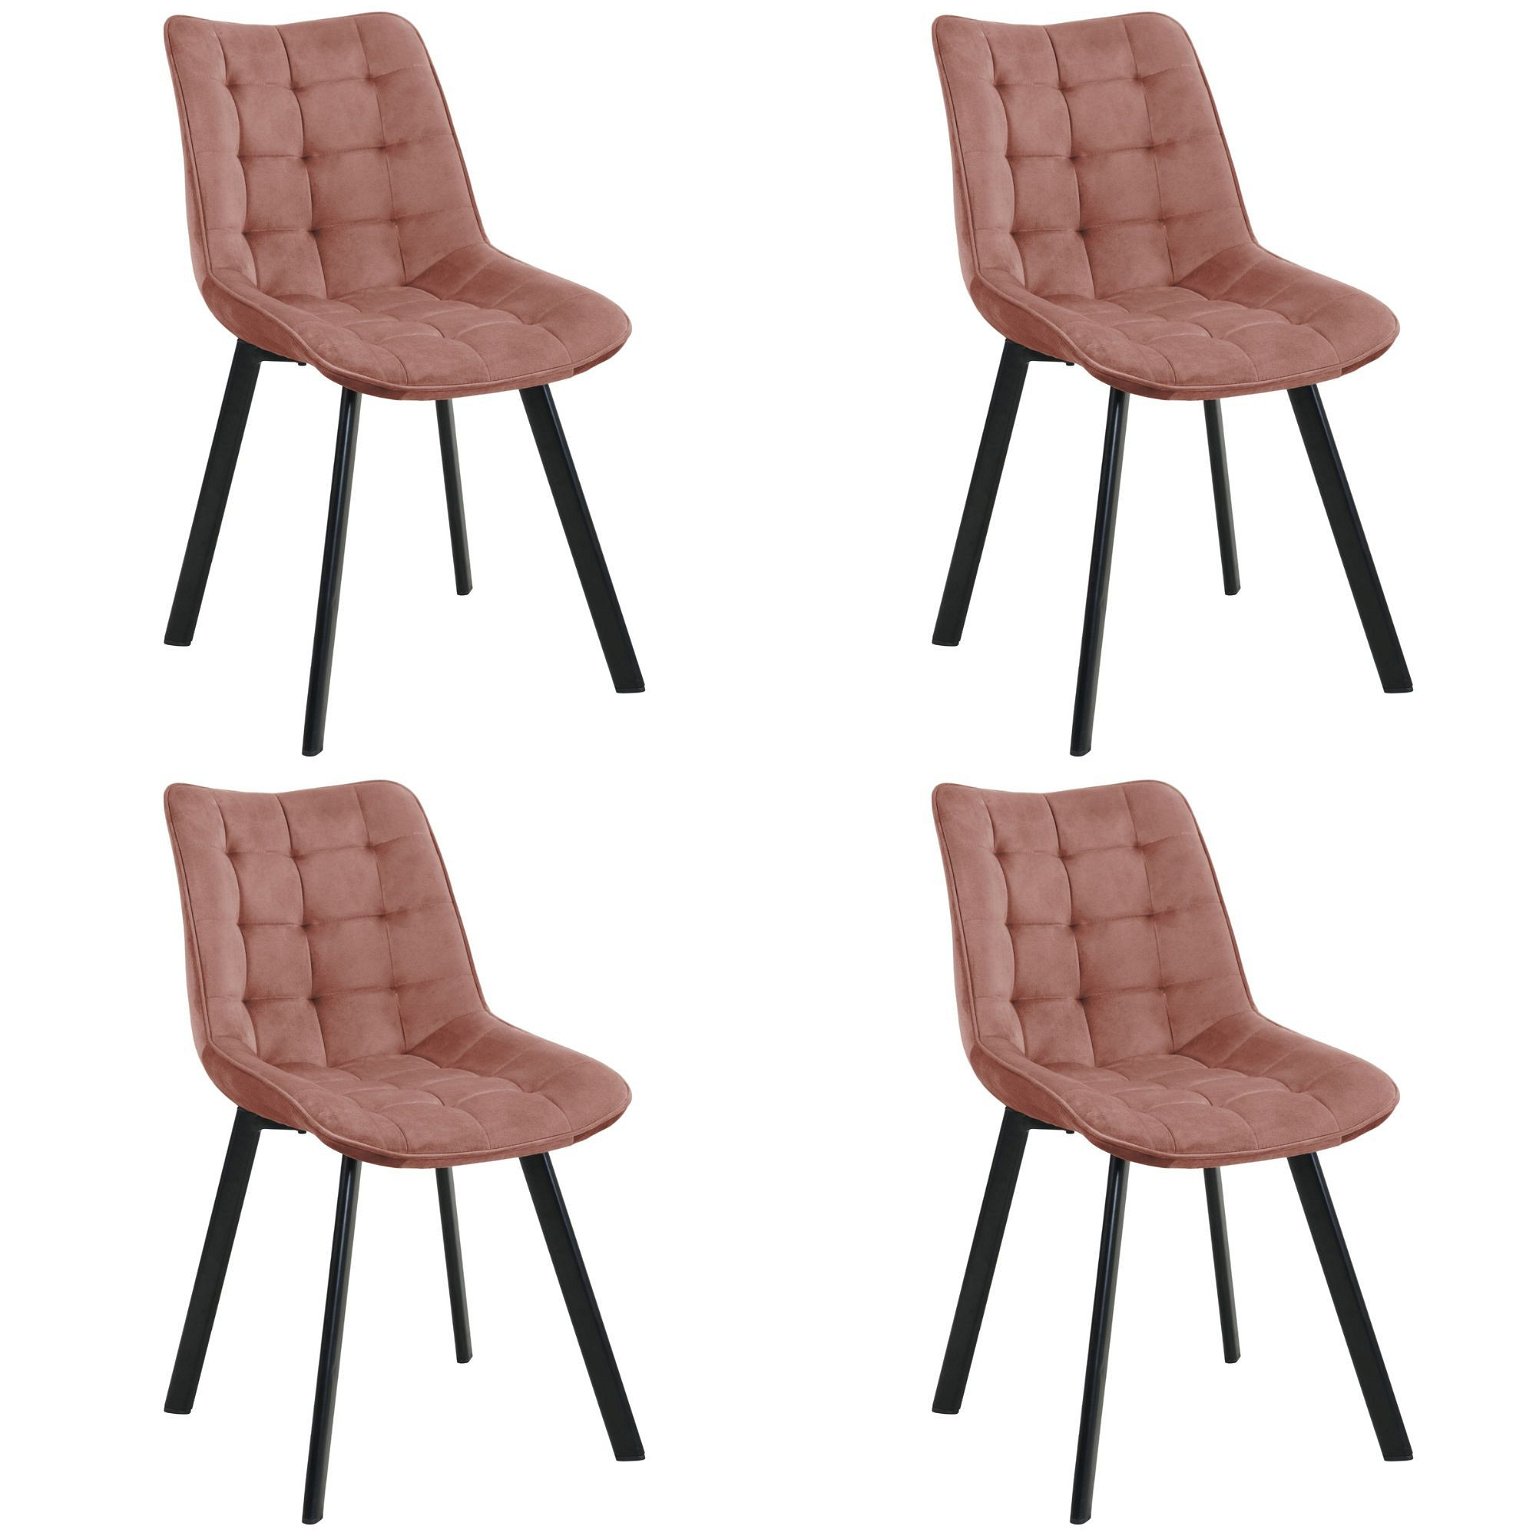 4-ių kėdžių komplektas SJ.28, rožinė